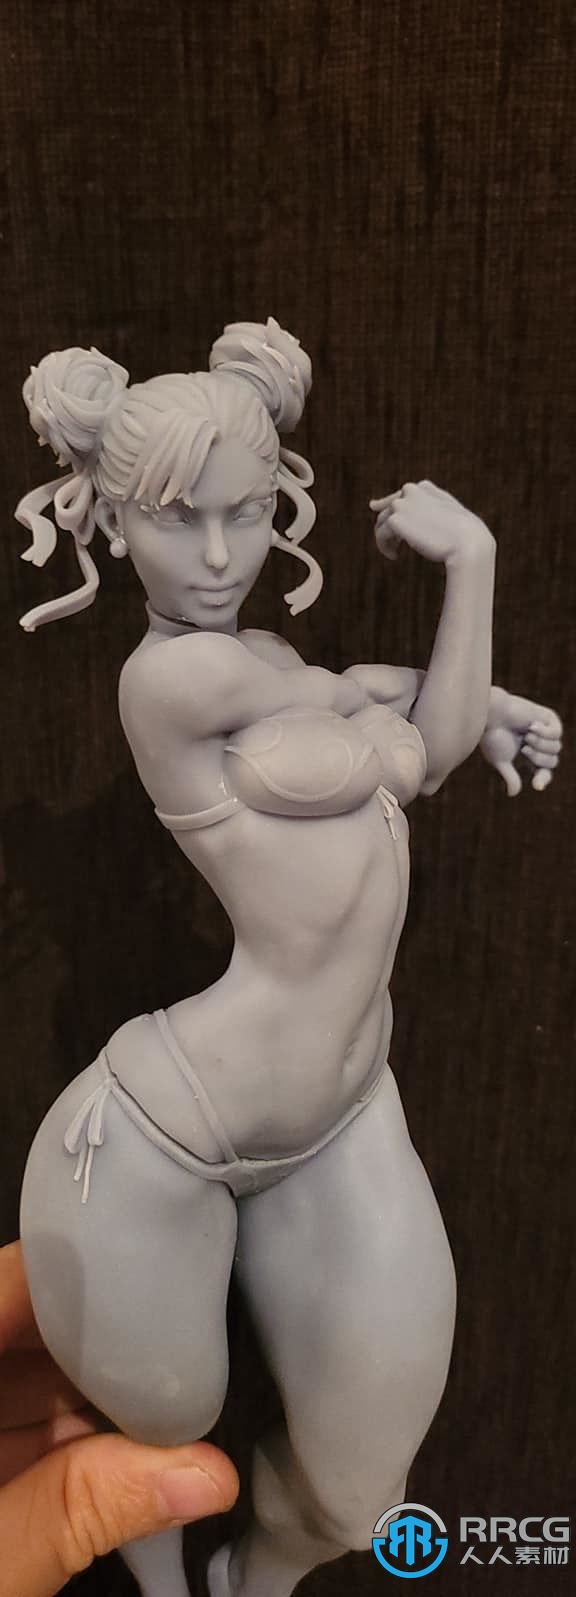 街头霸王游戏角色春丽沙滩版雕塑3D打印模型